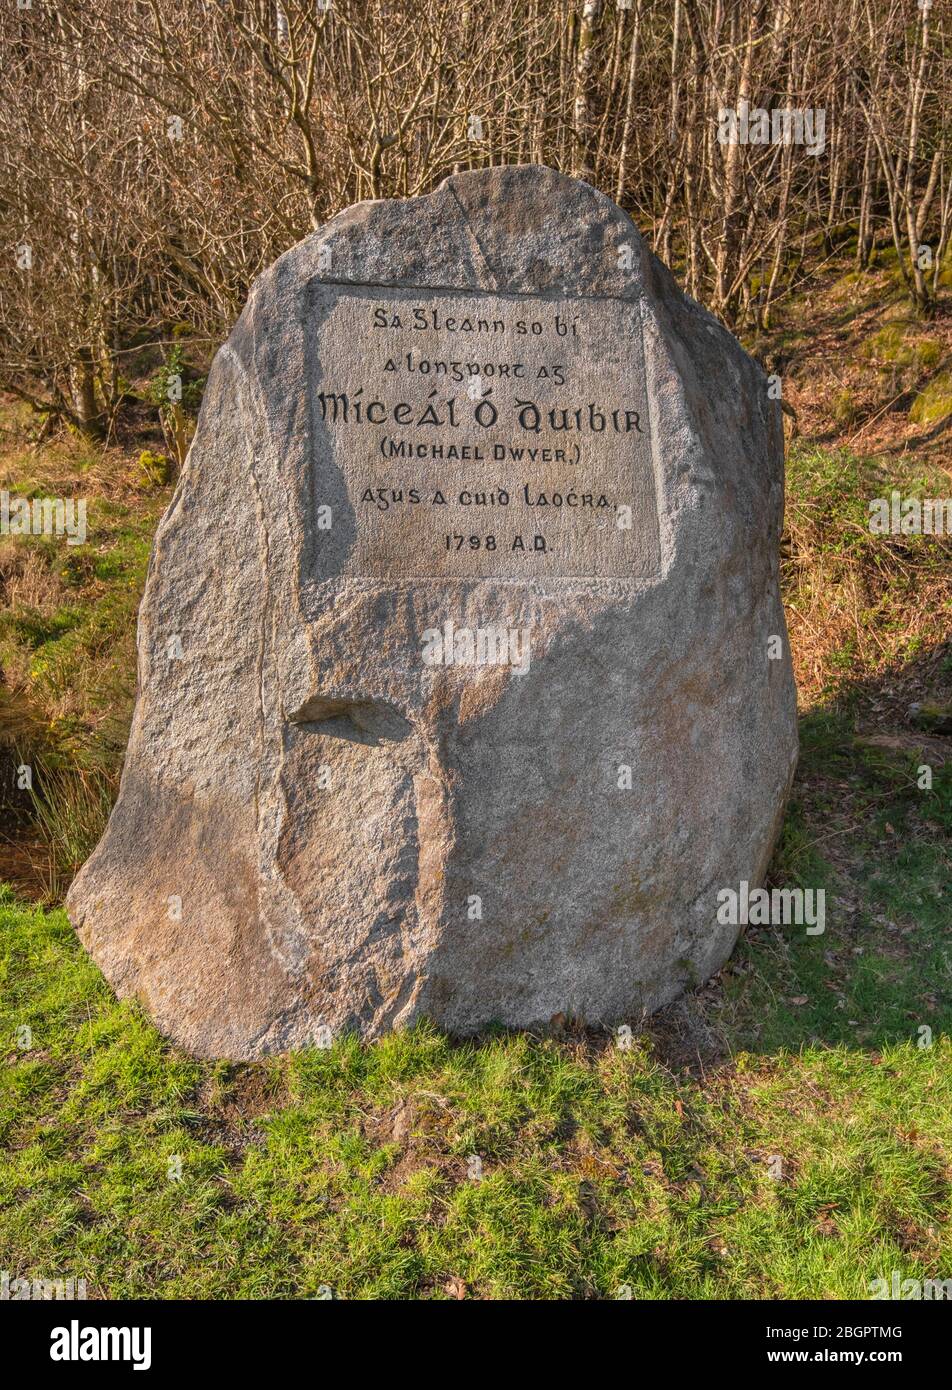 Irland, Grafschaft Wicklow, Glenmalure Valley, 1798 United Iren Rebellion Memorial in Erinnerung an Michael Dwyer einer der Aufstände Führer in der Gegend. Stockfoto